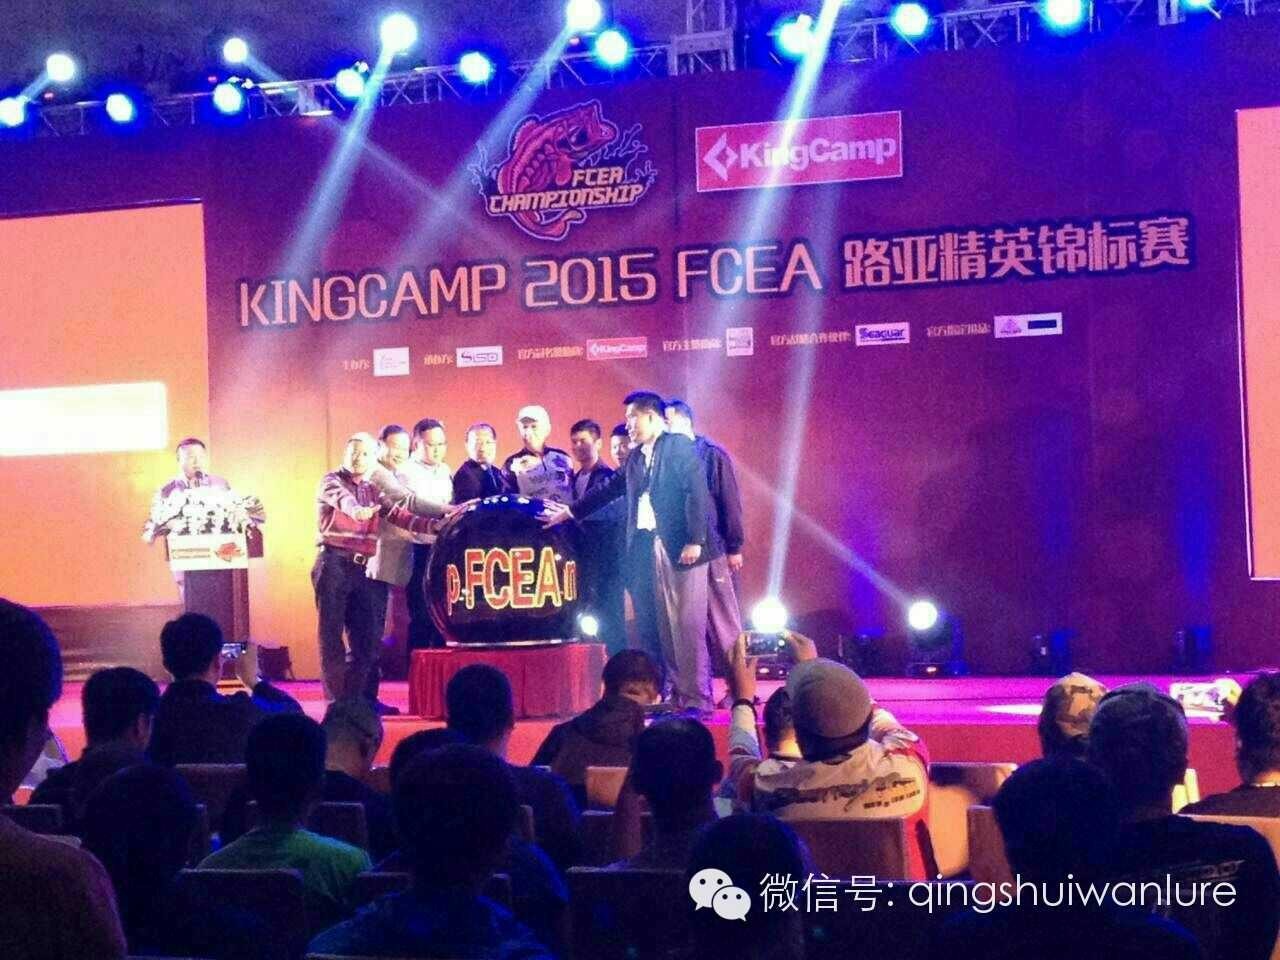 KINGCAMP 2015FCEA路亚精英锦标赛天津站成功举办暨《动感钓鱼》路亚中国版栏目顺利开机